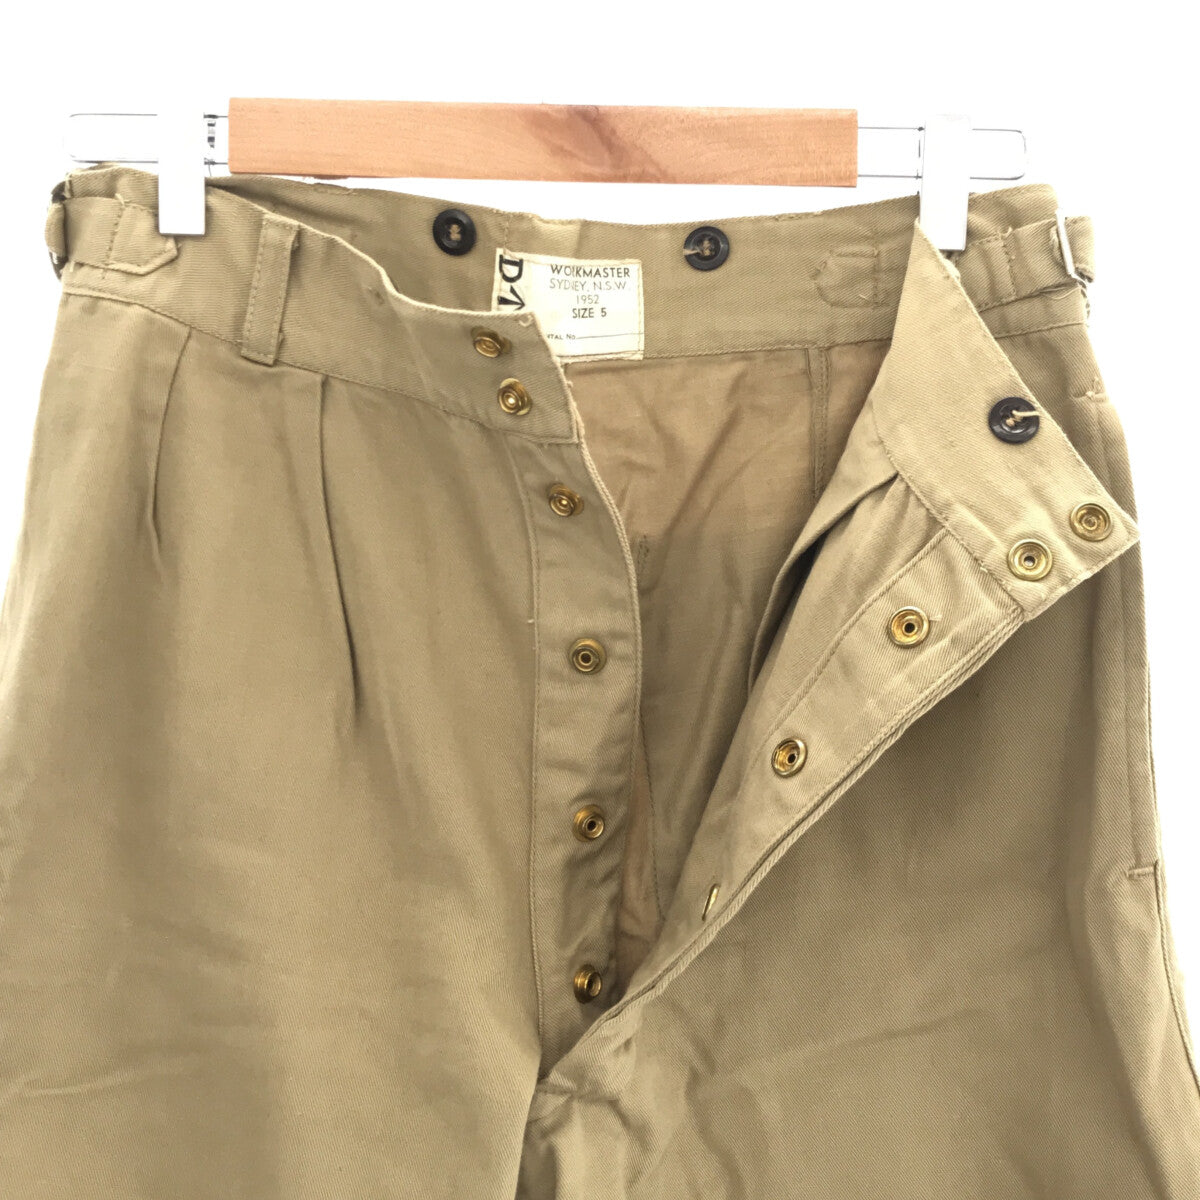 VINTAGE / ヴィンテージ古着 | 推定1950s〜 Australian Army Gurkha Chino Trousers / オーストラリア軍 2タック グルカ チノトラウザーパンツ | 5 |